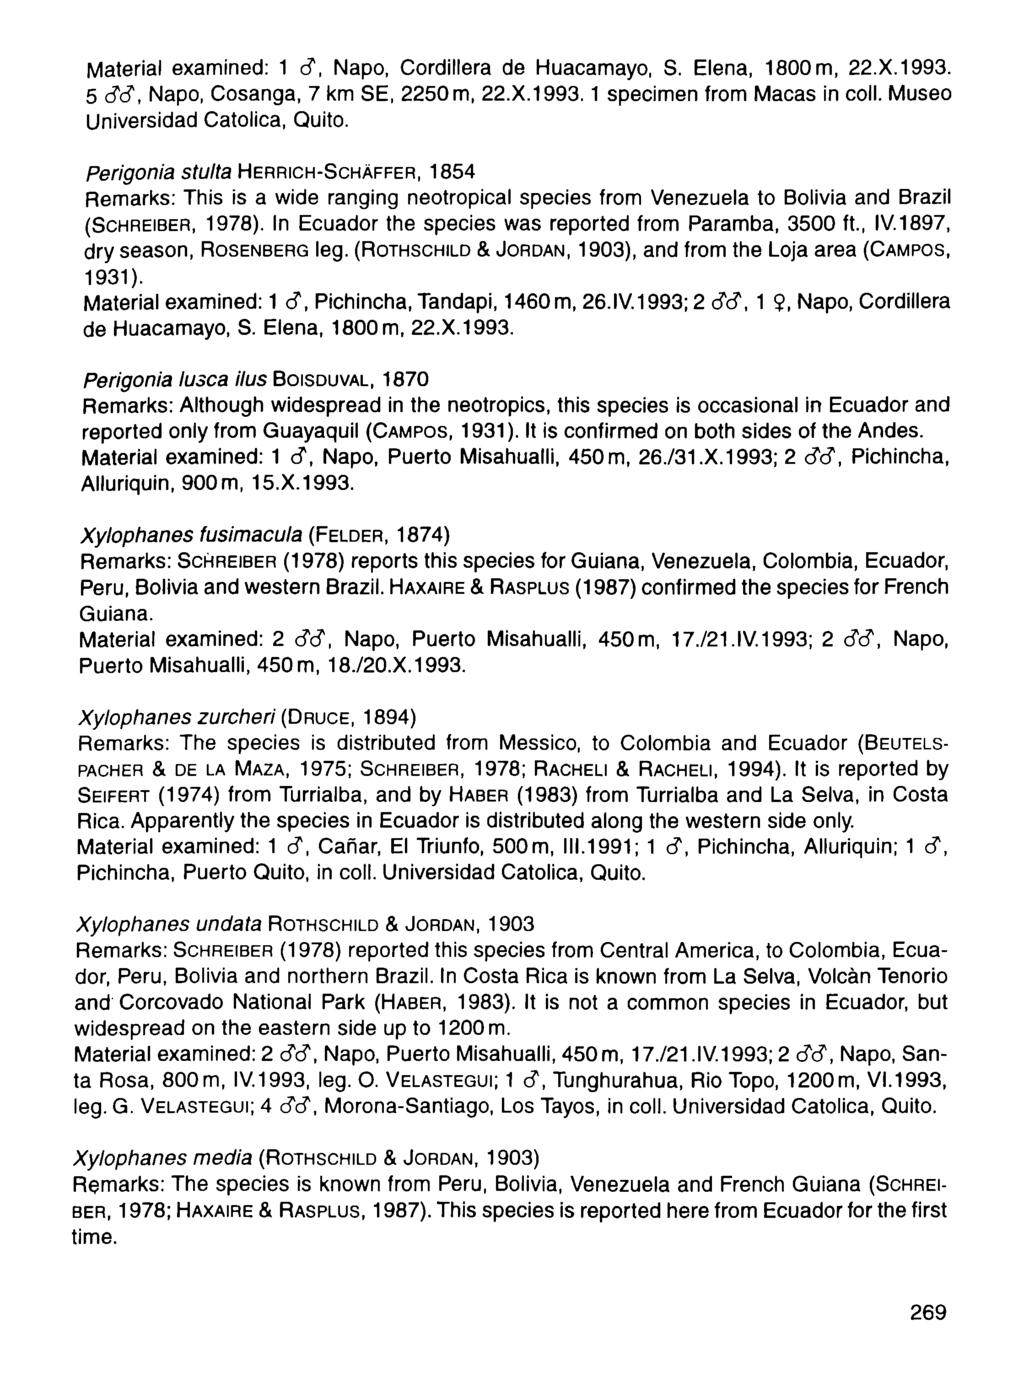 Material examined: 1 d, Napo, Cordillera de Huacamayo, S. Elena, 1800 m, 22.X.1993. 5 d d, Napo, Cosanga, 7 km SE, 2250 m, 22.X.1993.1 specimen from Macas in coll. Museo Universidad Catolica, Quito.